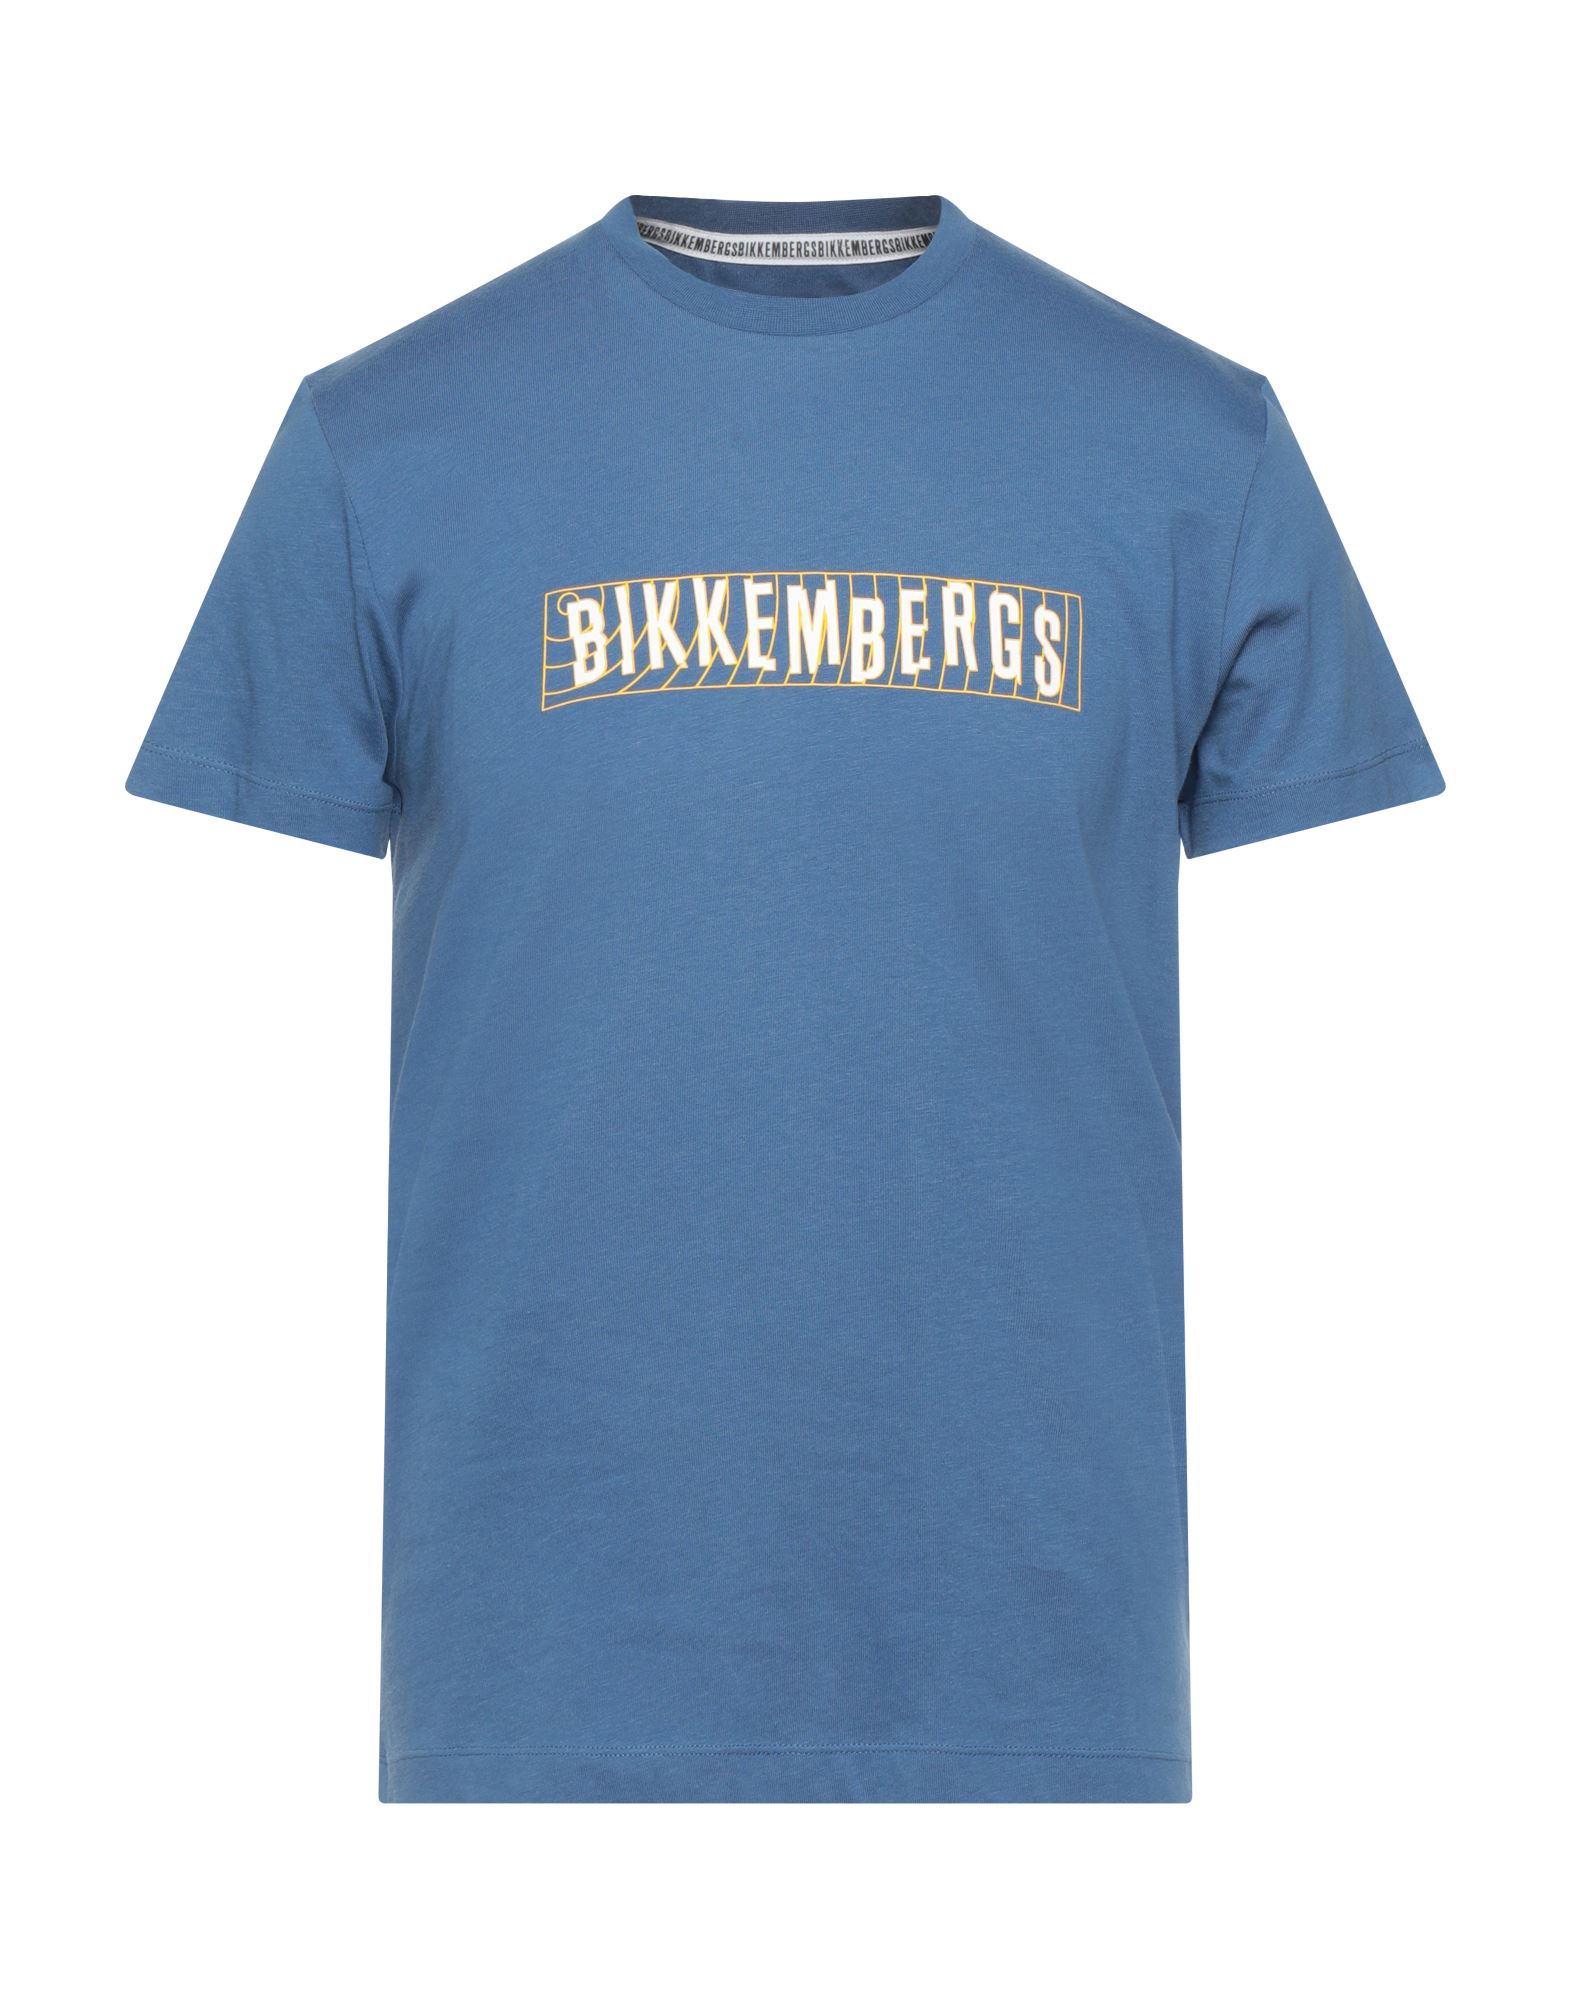 BIKKEMBERGS T-shirts Herren Taubenblau von BIKKEMBERGS